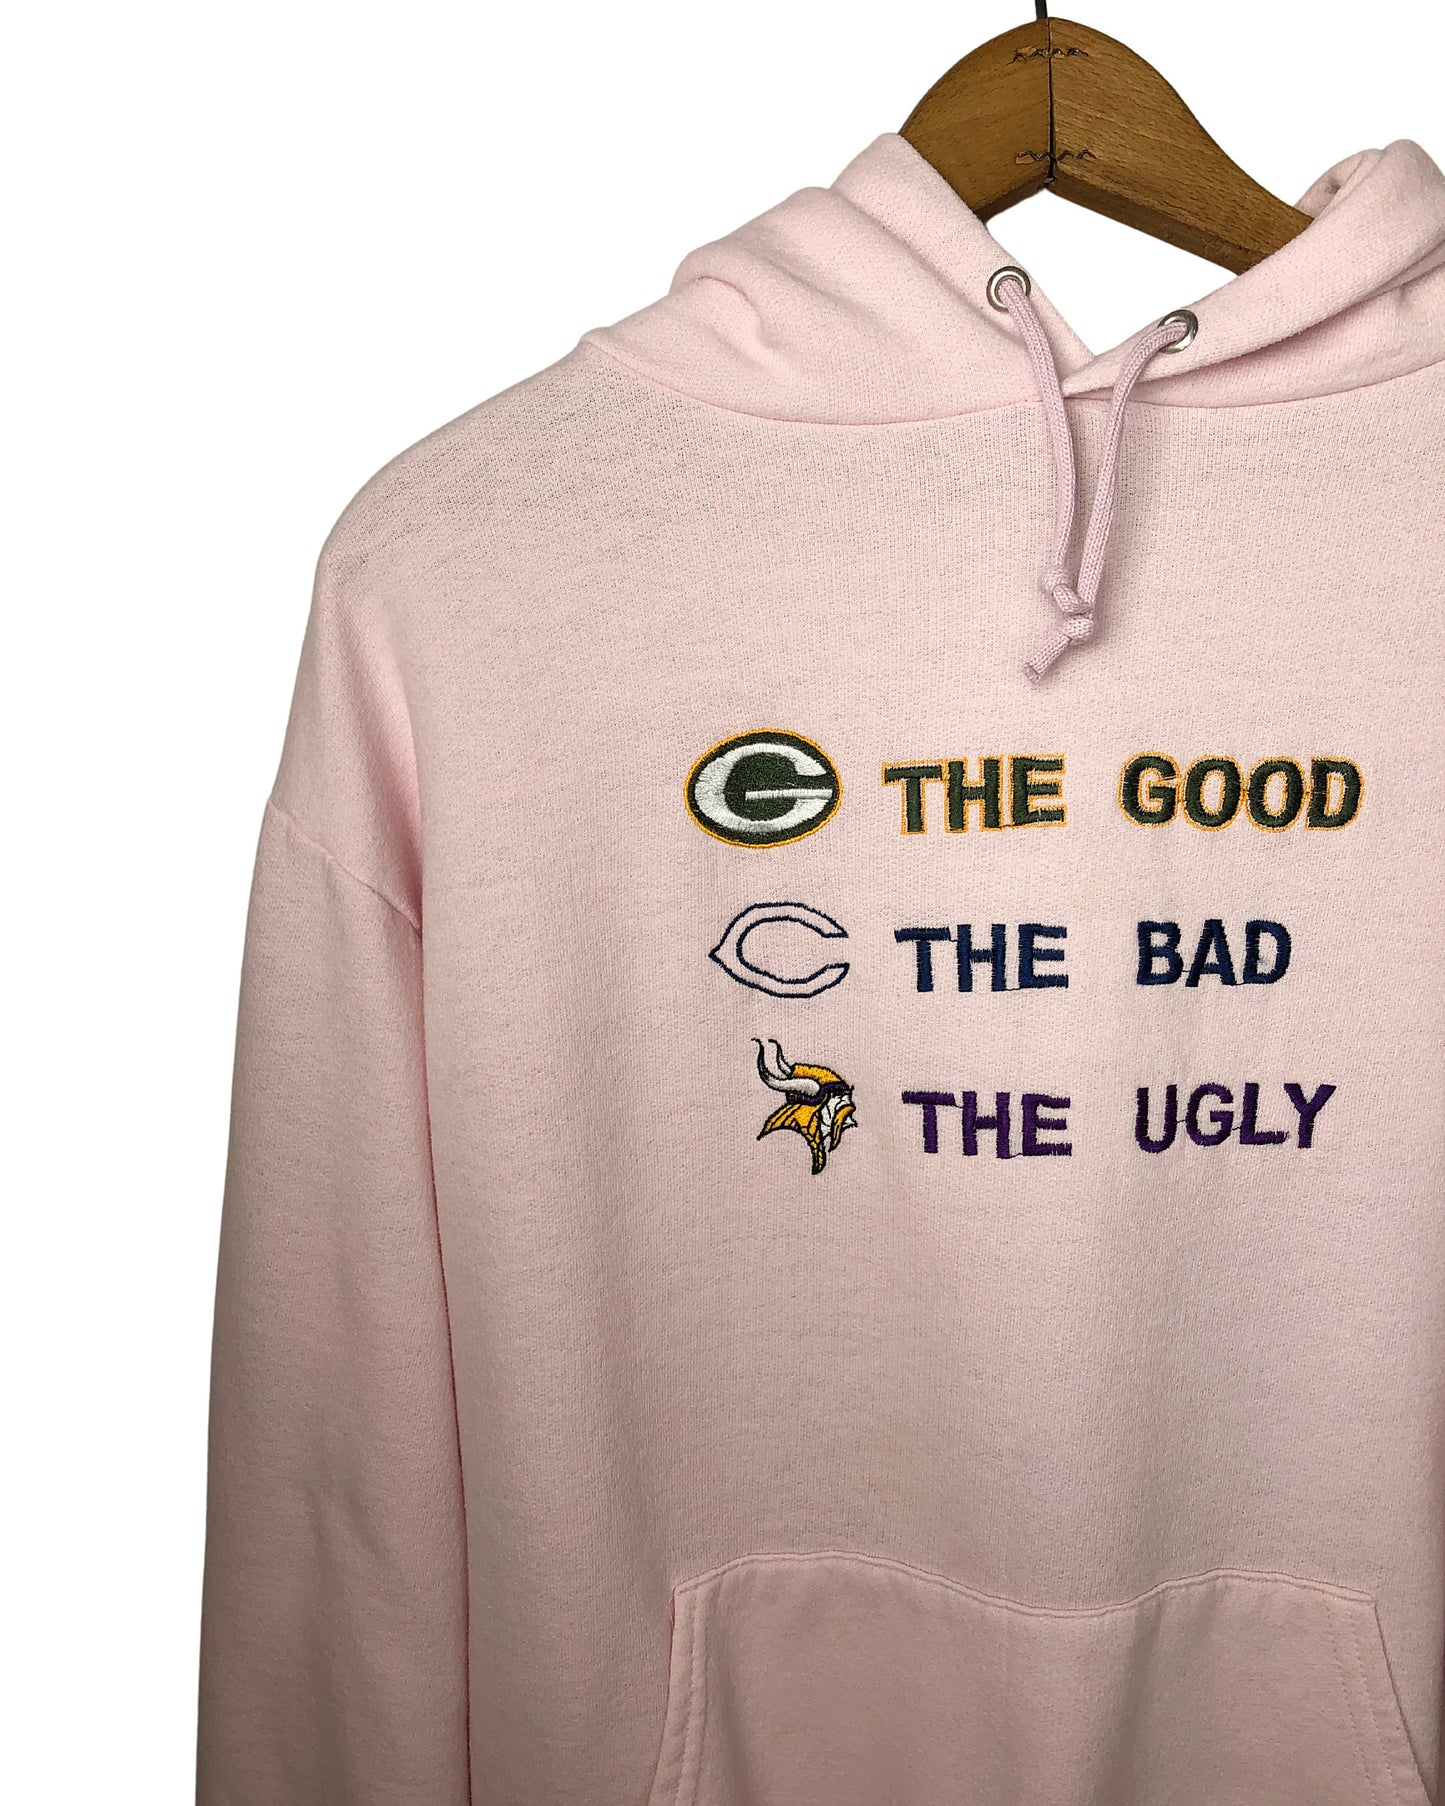 Vintage 90's Packers Bears, Vikings Good Bad Ugly Hoodie Size L